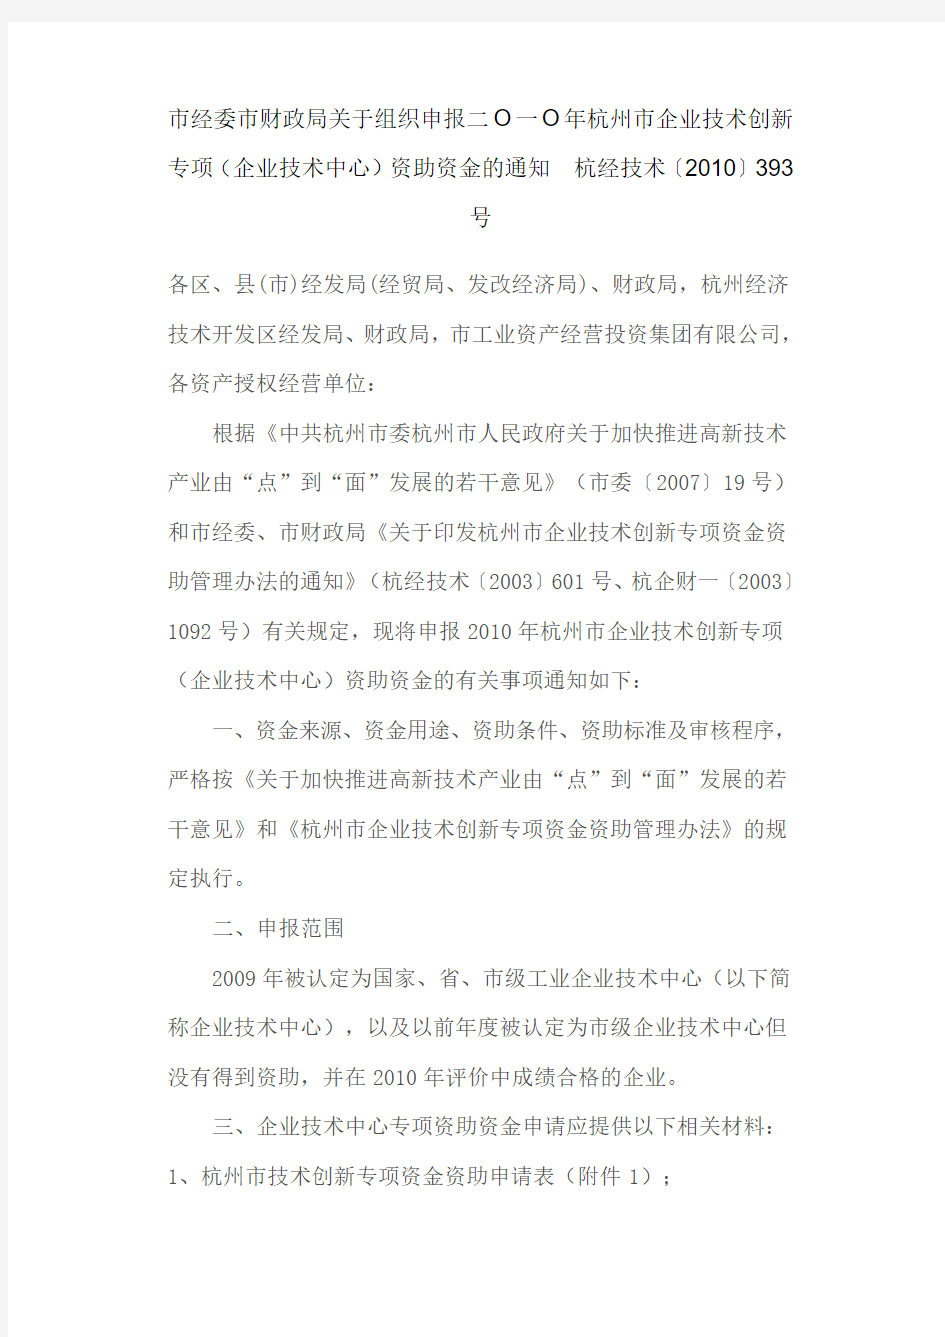 二O一O年杭州市企业技术创新专项(企业技术中心)资助资金的通知